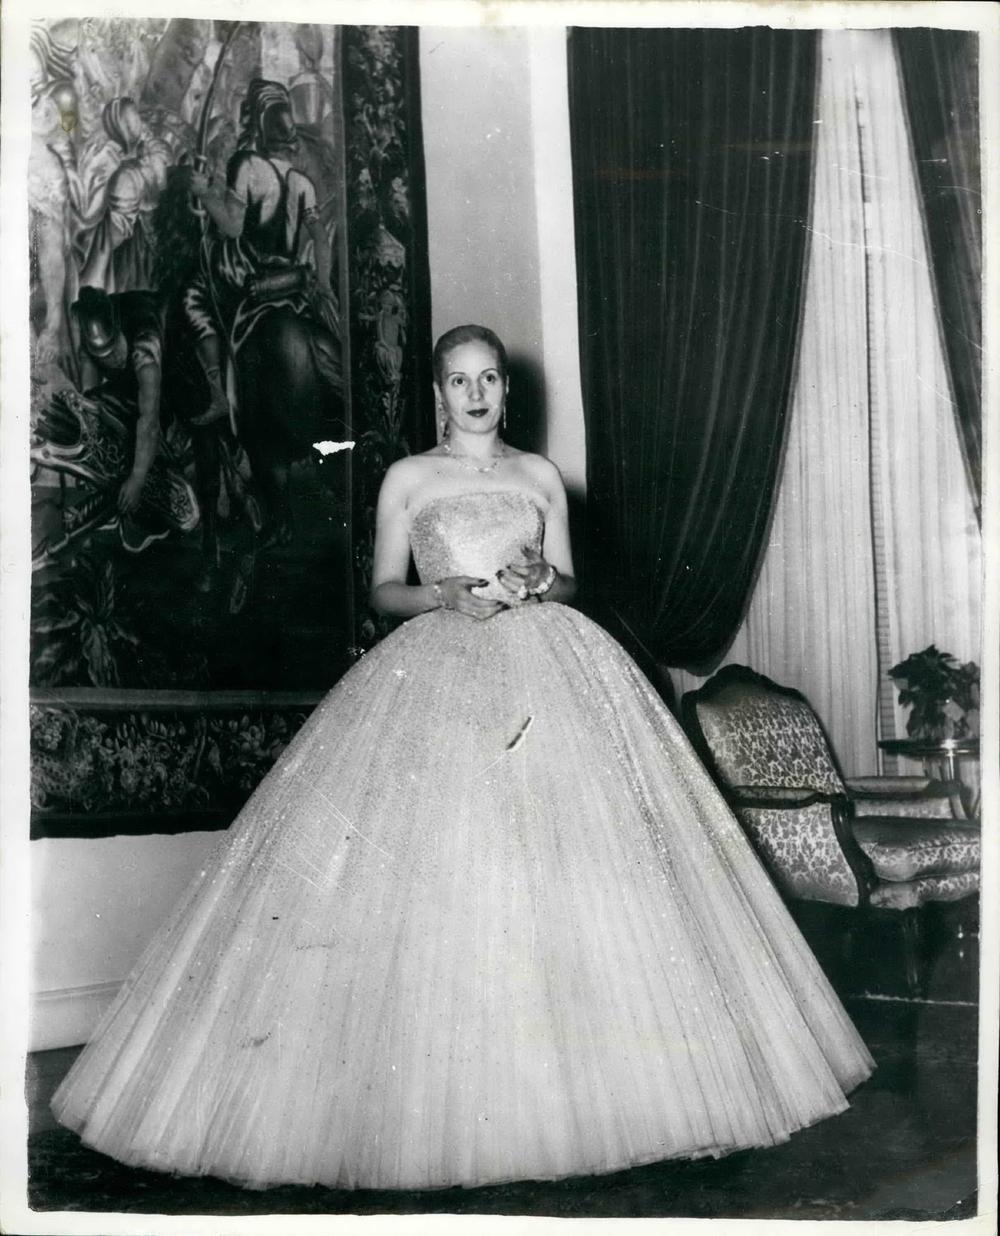 <p>Prva supruga predsednika neke zemlje koja je odbijala da stoji u senci i nemo gleda muke <em>malog</em> čoveka, ali i prva koja je izazivala divljenje svojim stilom bila je Evita Peron.</p>